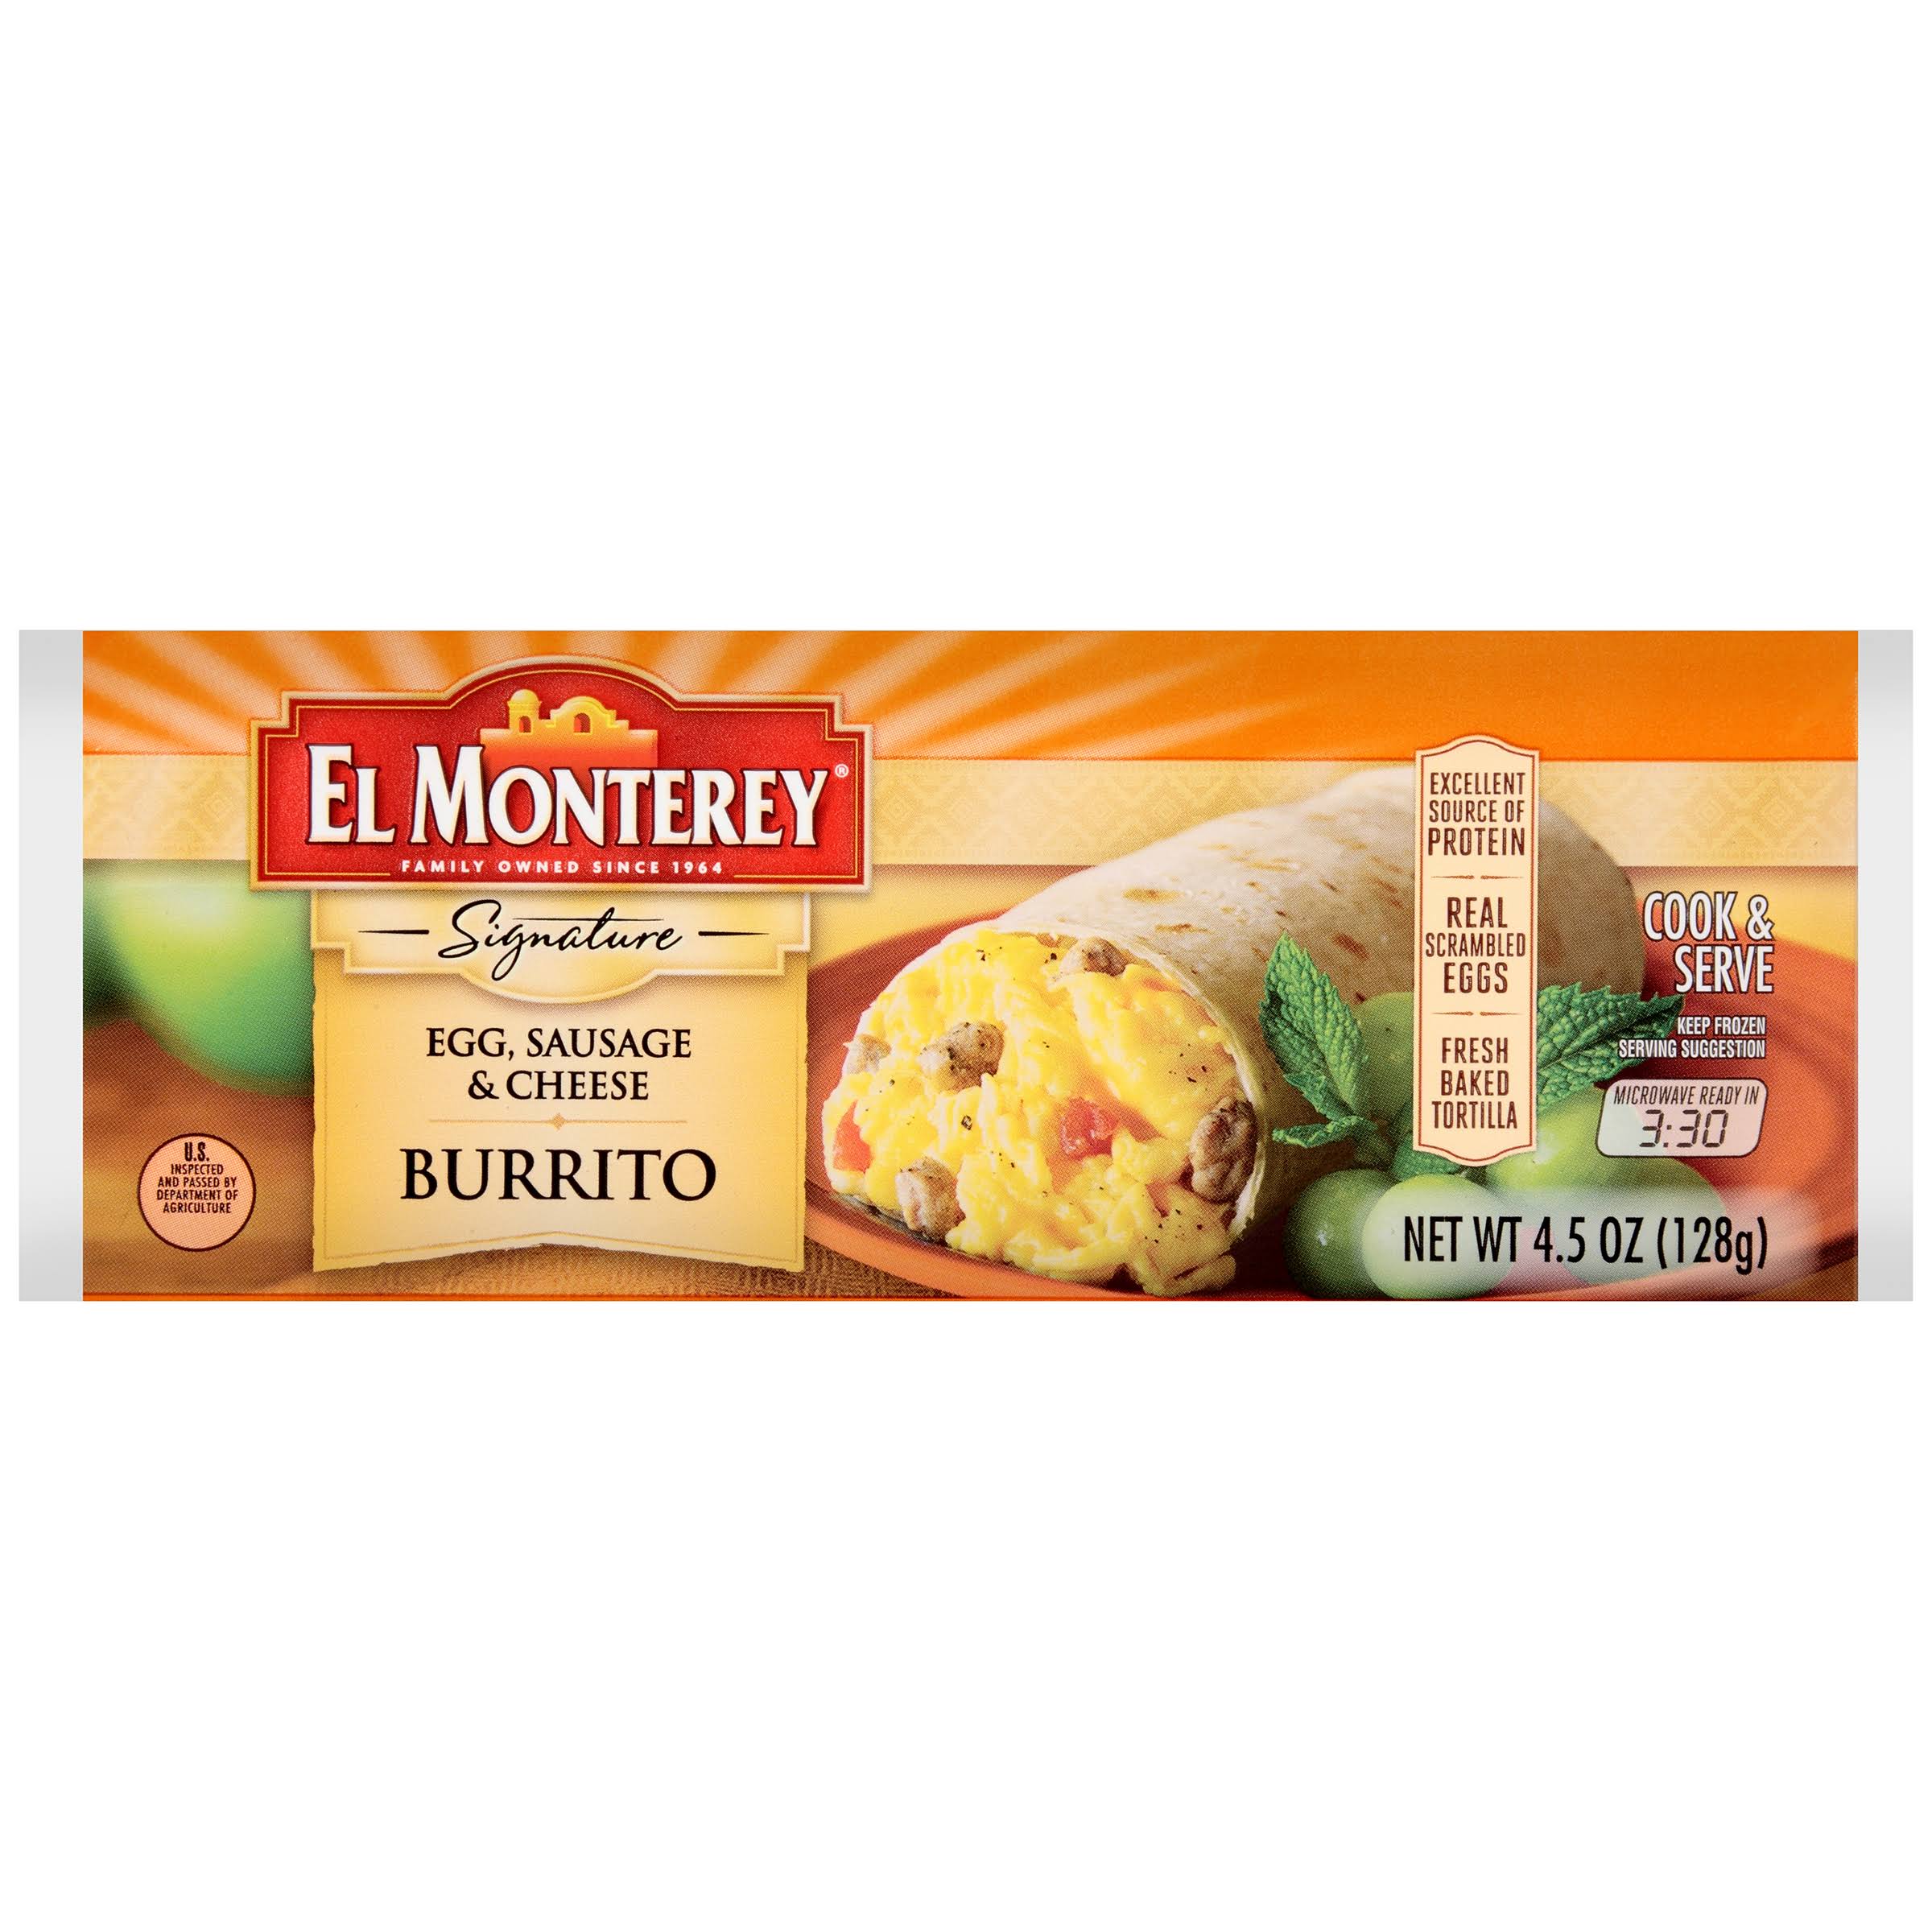 El monterey egg saugage & cheese burrito 4.5oz